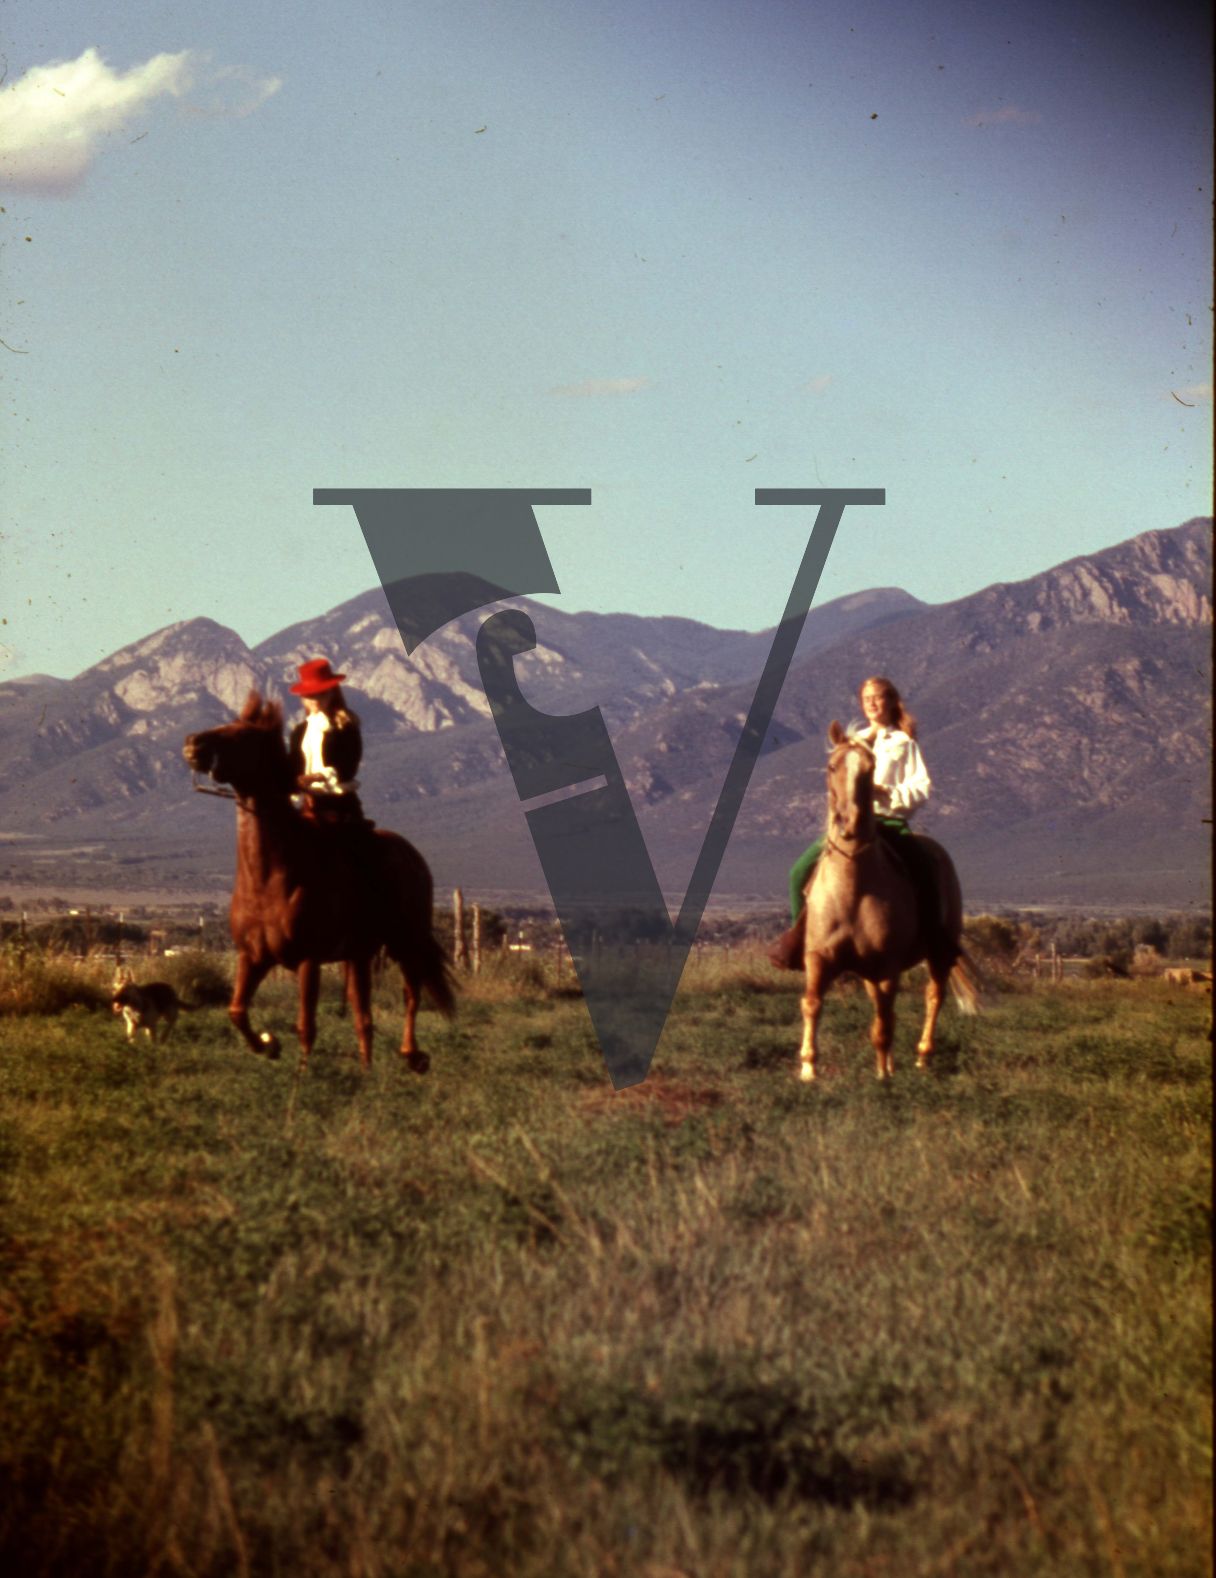 Taos, New Mexico,woman on horseback, mountains.